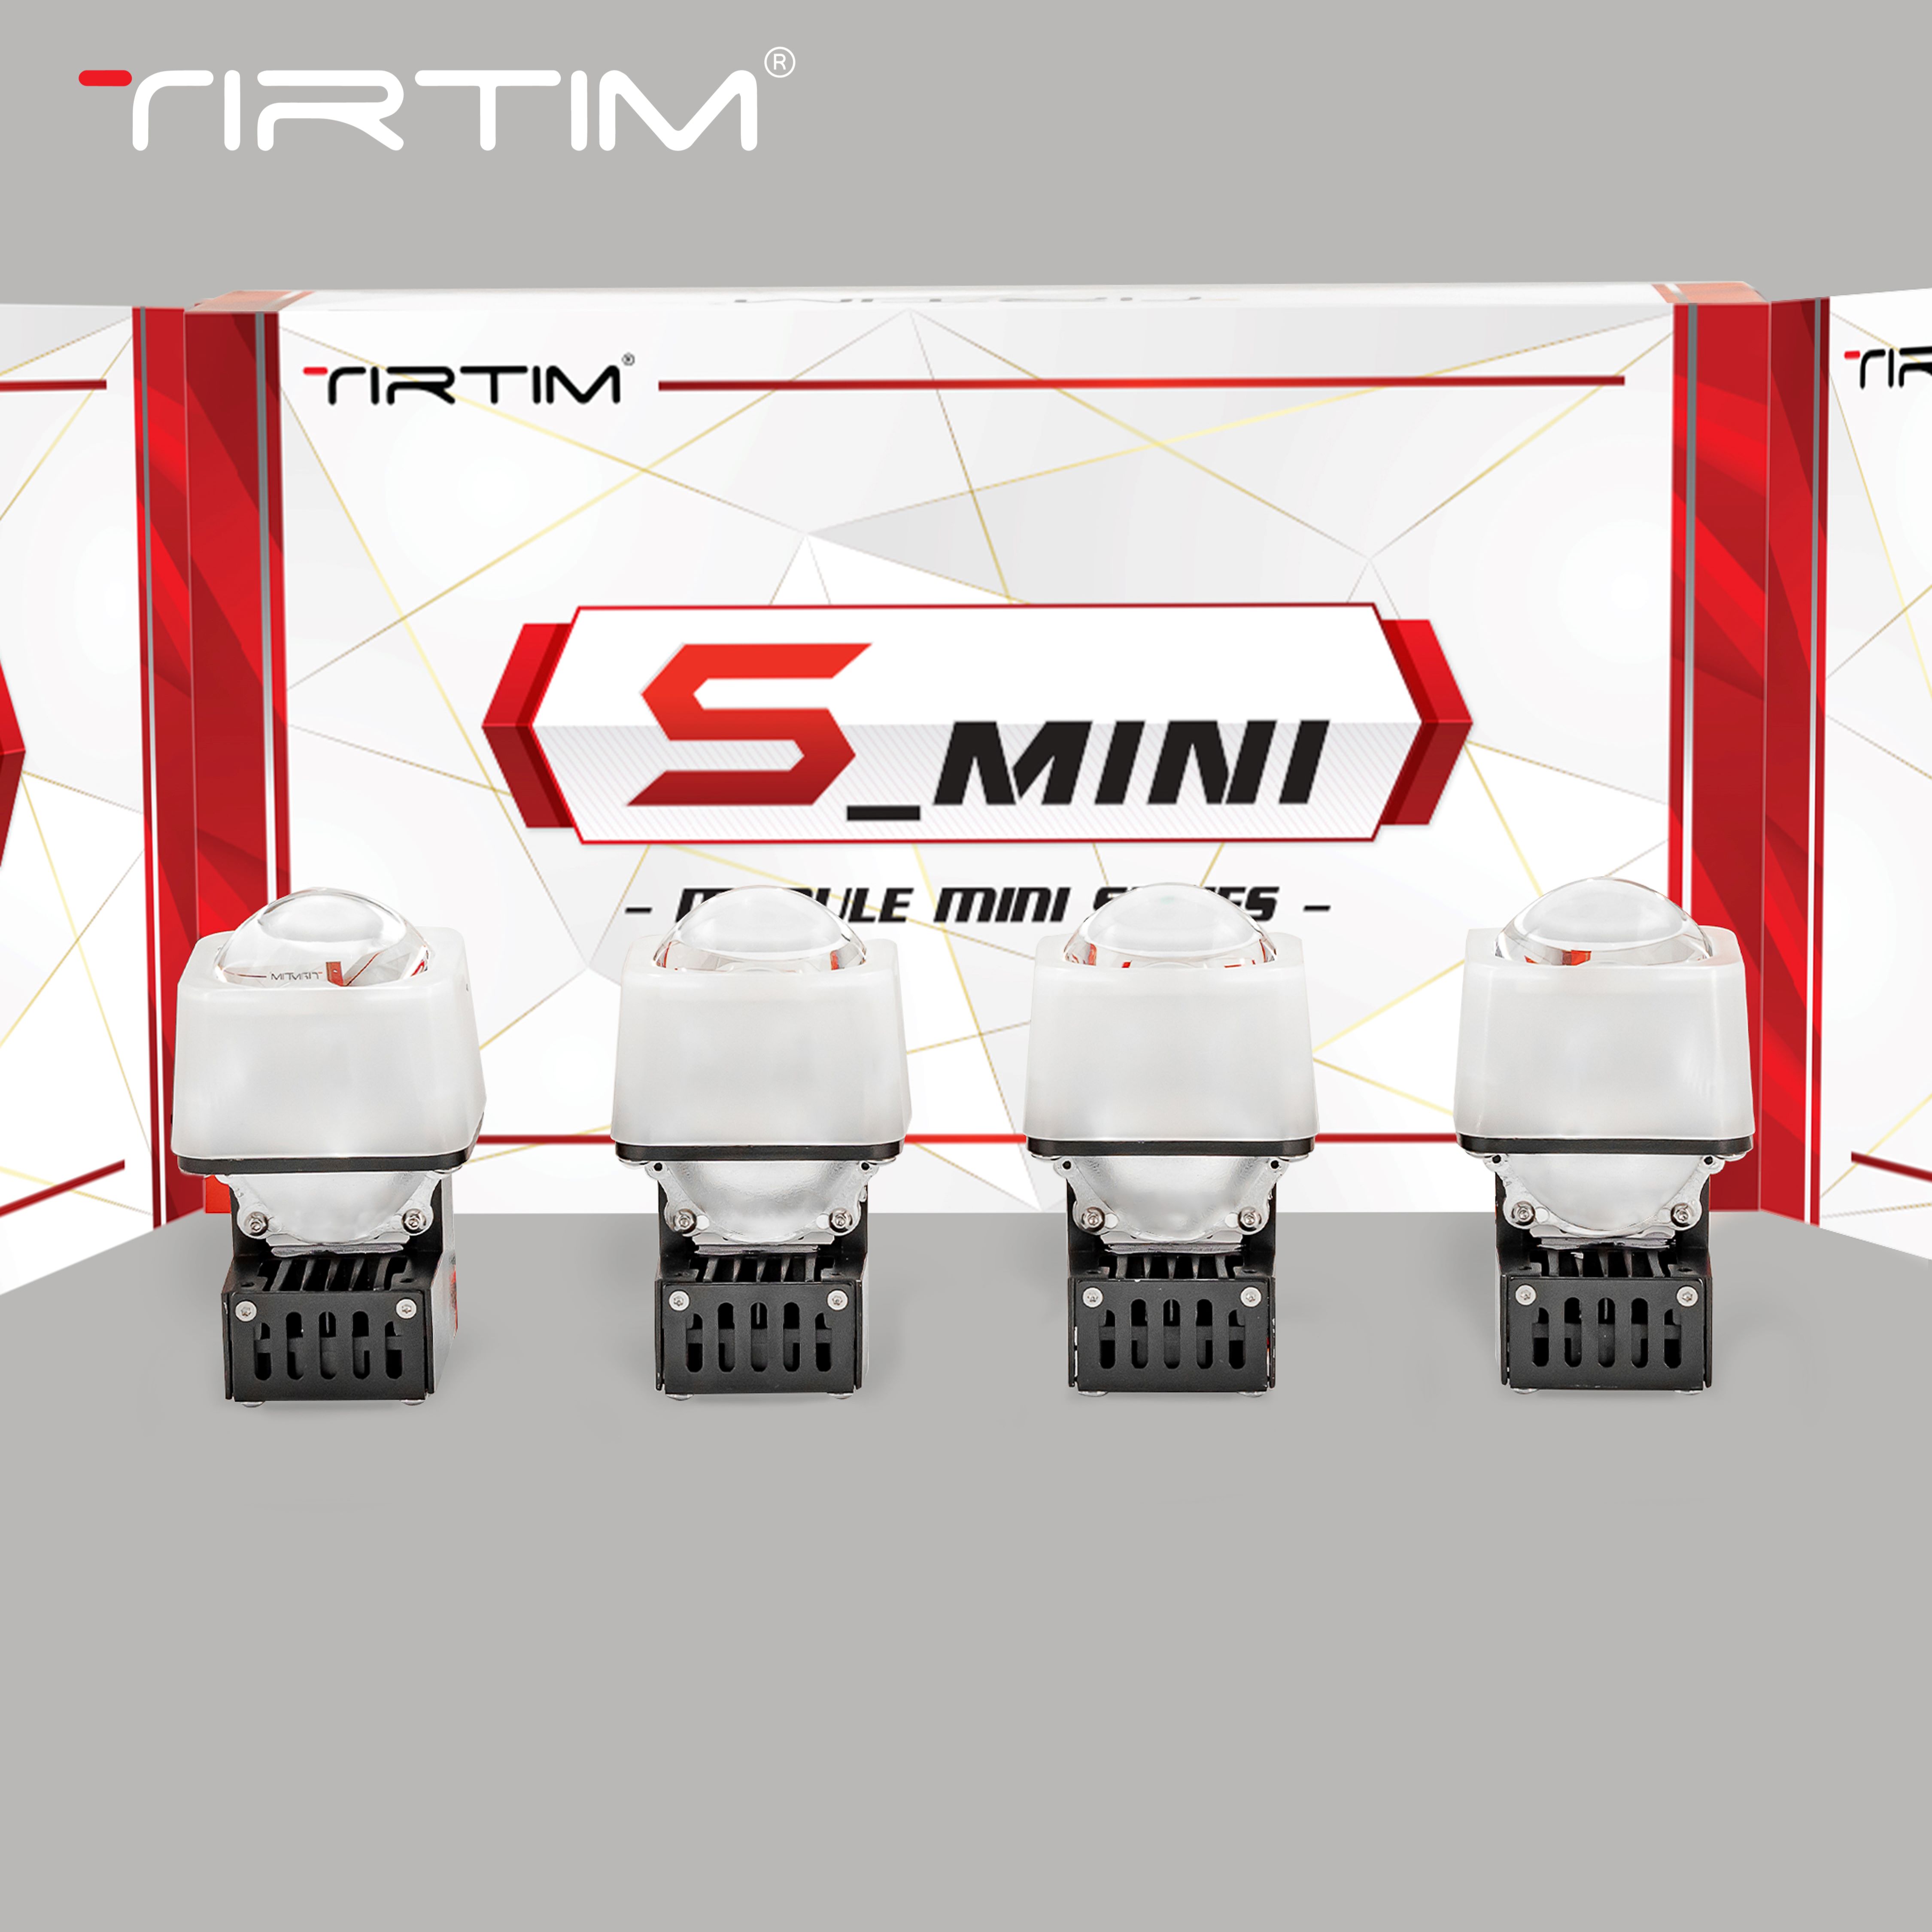 MODULE TIRTIM S3 MINI 1.5 INCH